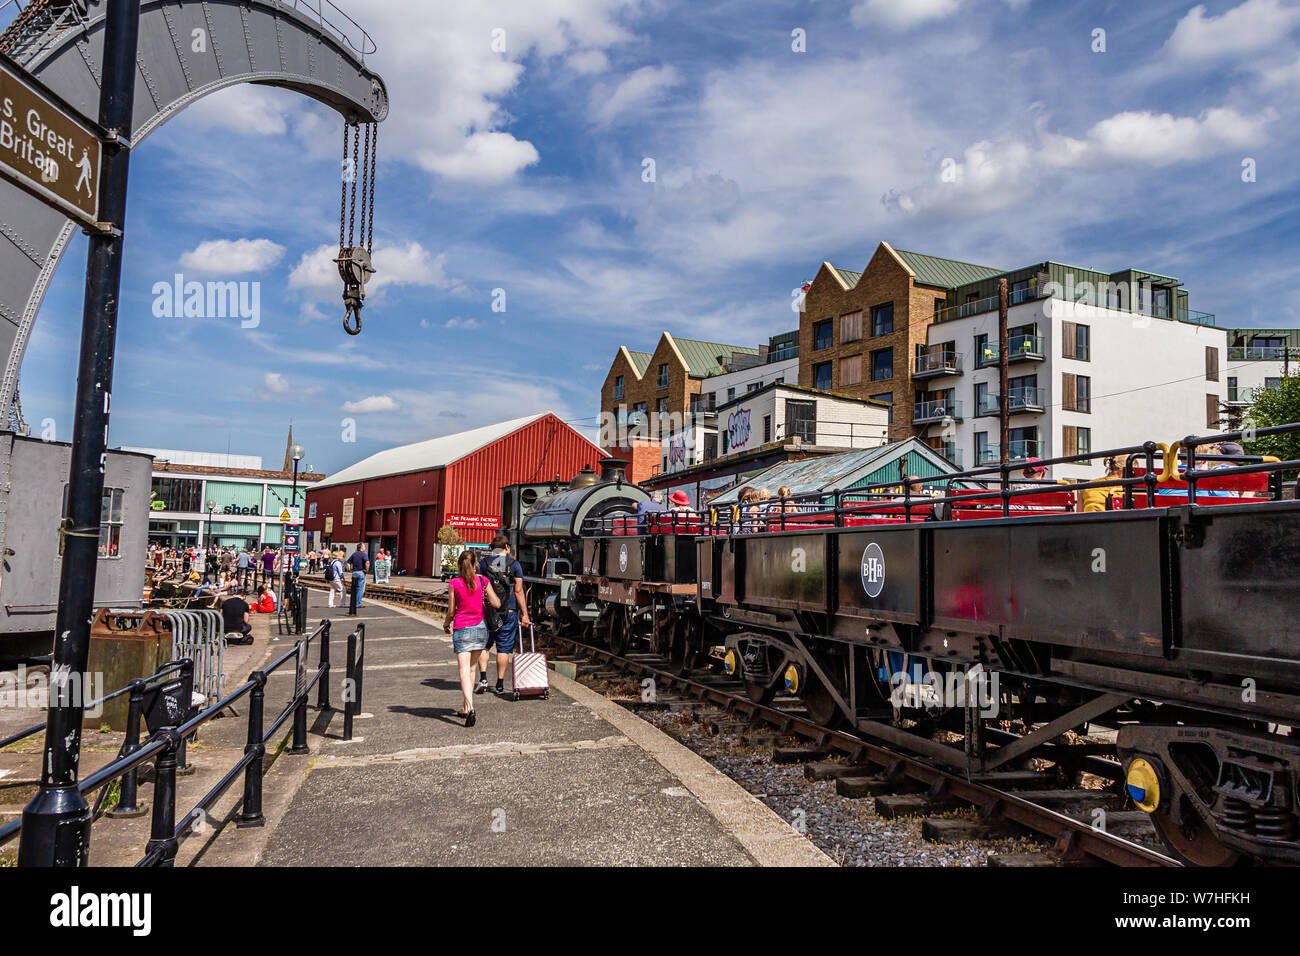 Les gens marcher entre le port et le chemin de grue à vapeur sur le quai de Prince's Wharf, Bristol, Royaume-Uni. Juillet 2019. Banque D'Images